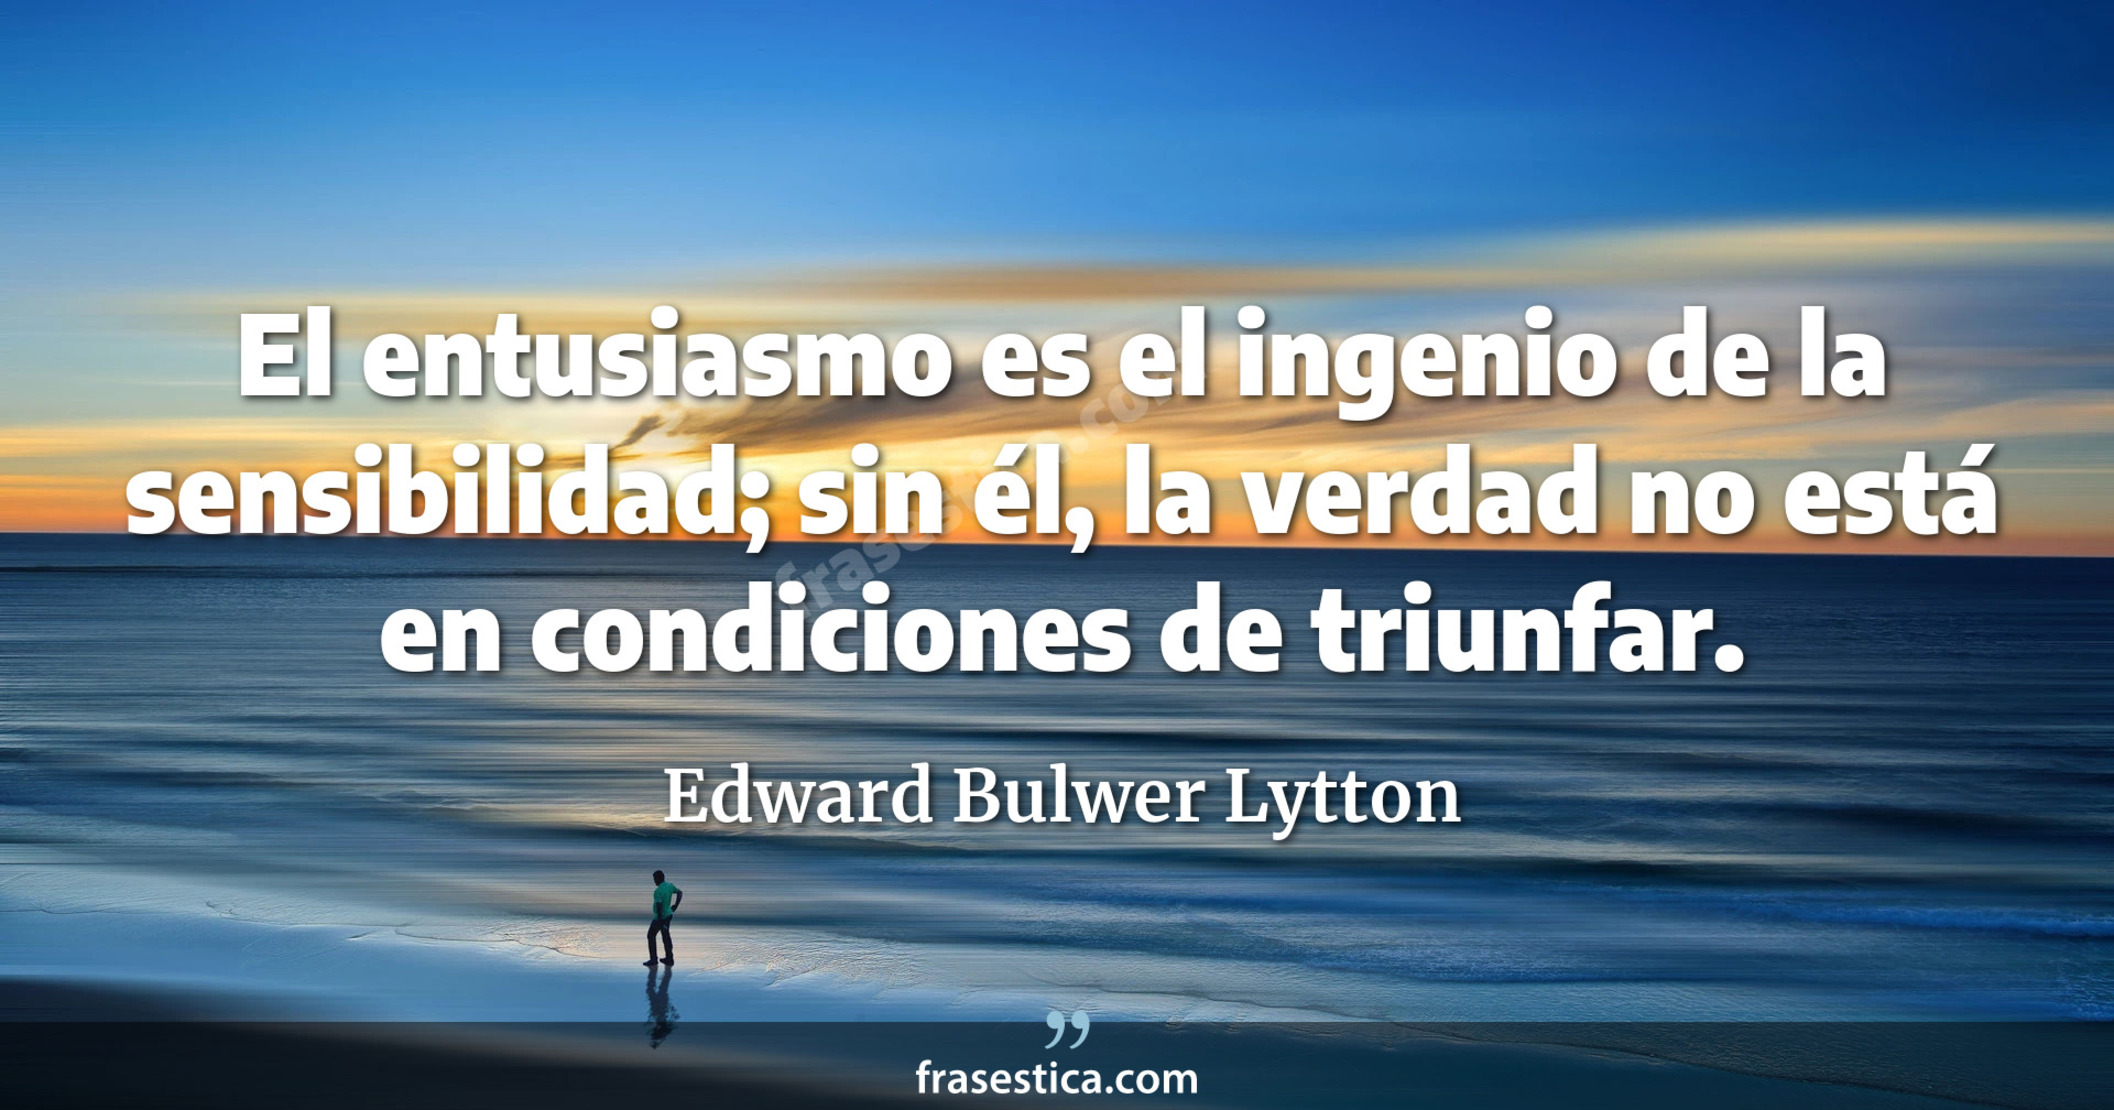 El entusiasmo es el ingenio de la sensibilidad; sin él, la verdad no está en condiciones de triunfar. - Edward Bulwer Lytton